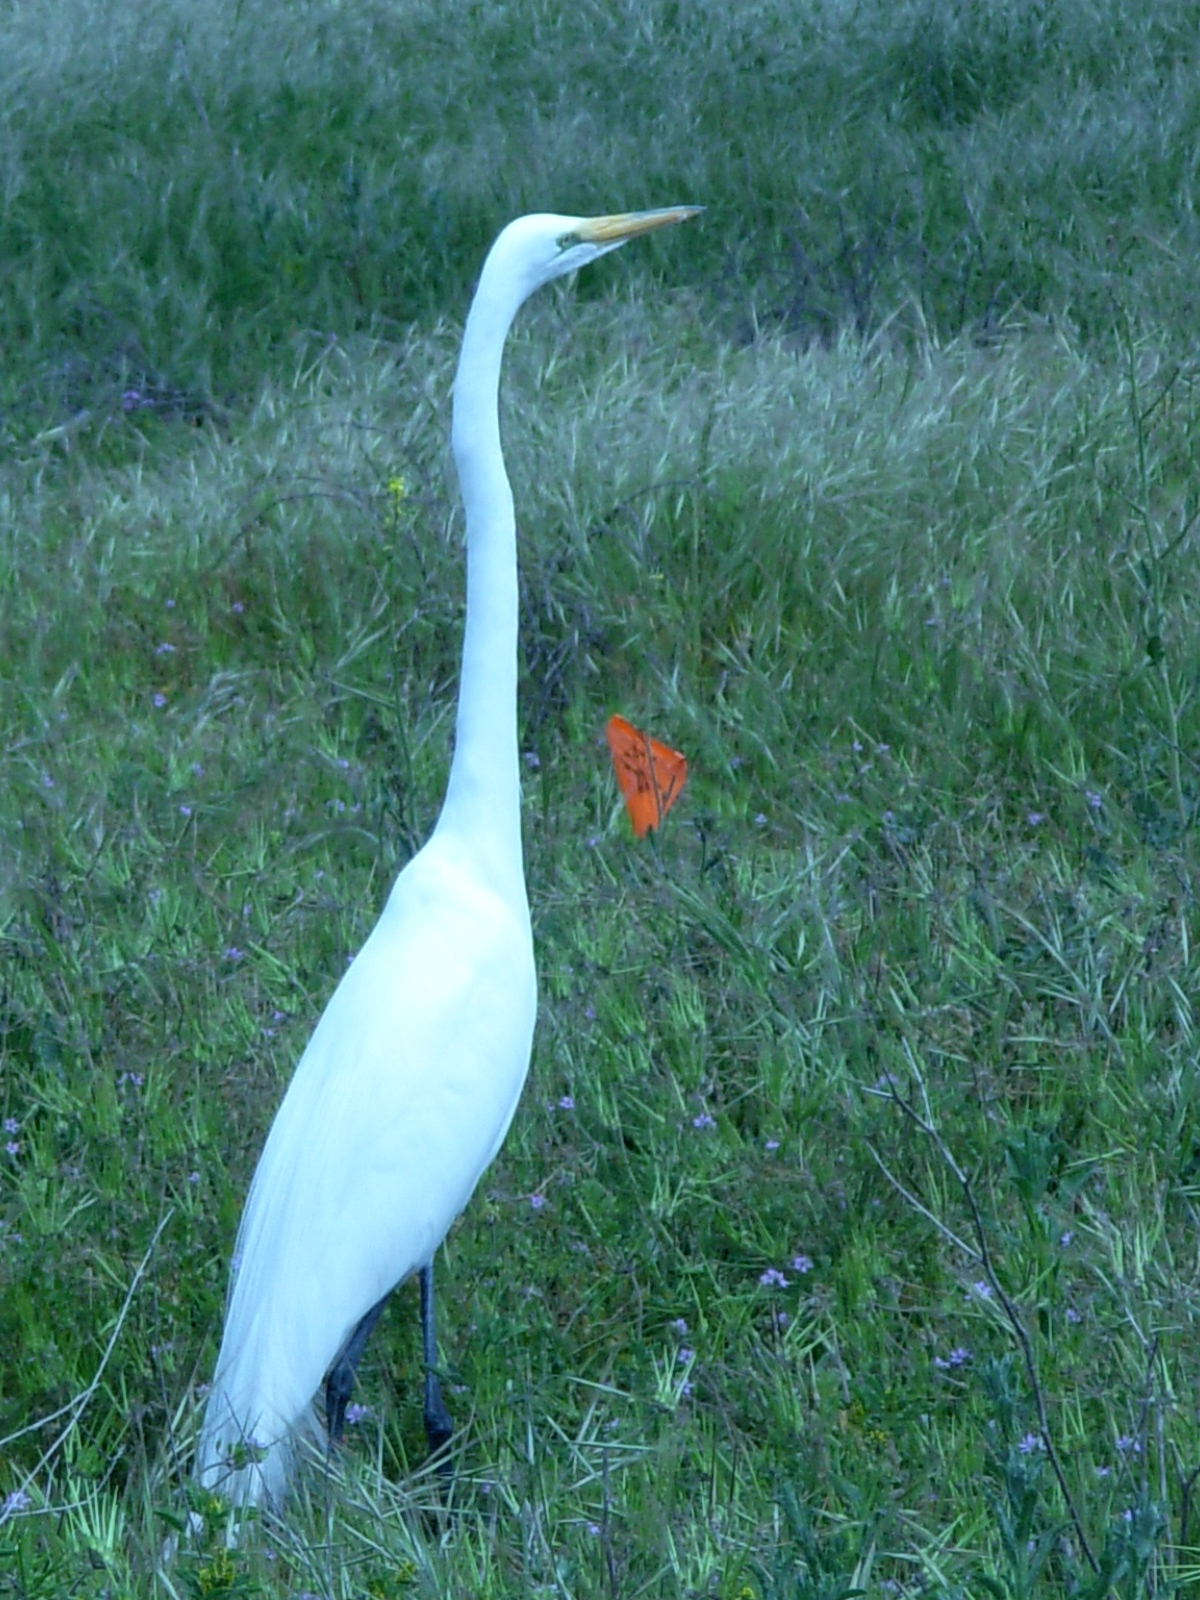 Great Egret at Bolsa Chica Wetlands